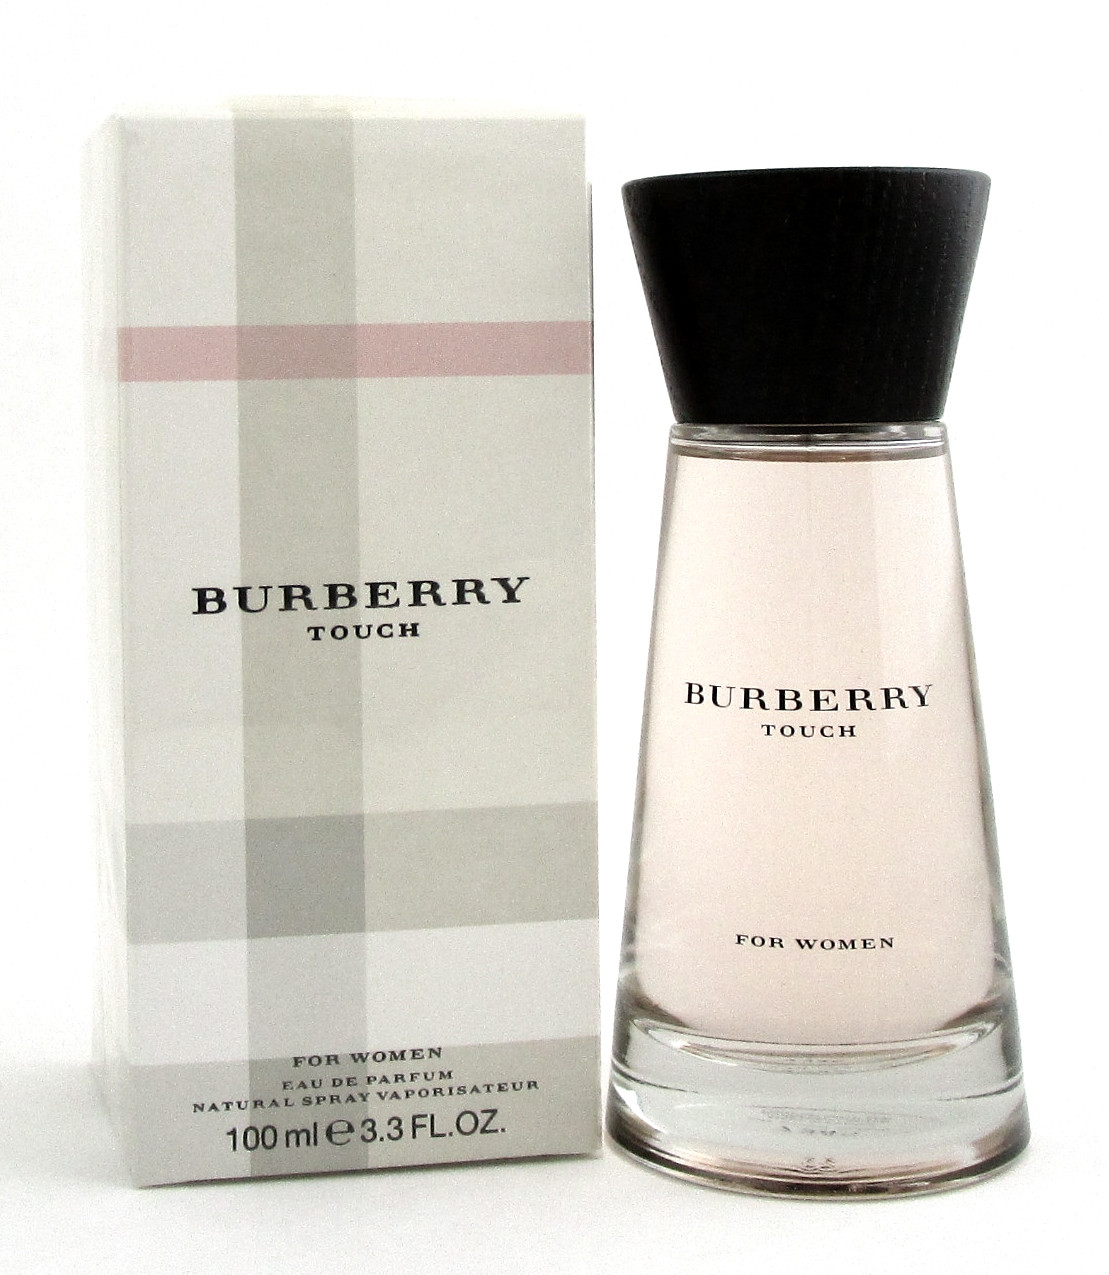 Burberry Touch by Burberry Eau De Parfum Spray 3.3oz./100ml. for Women -  NotJustPerfume.com